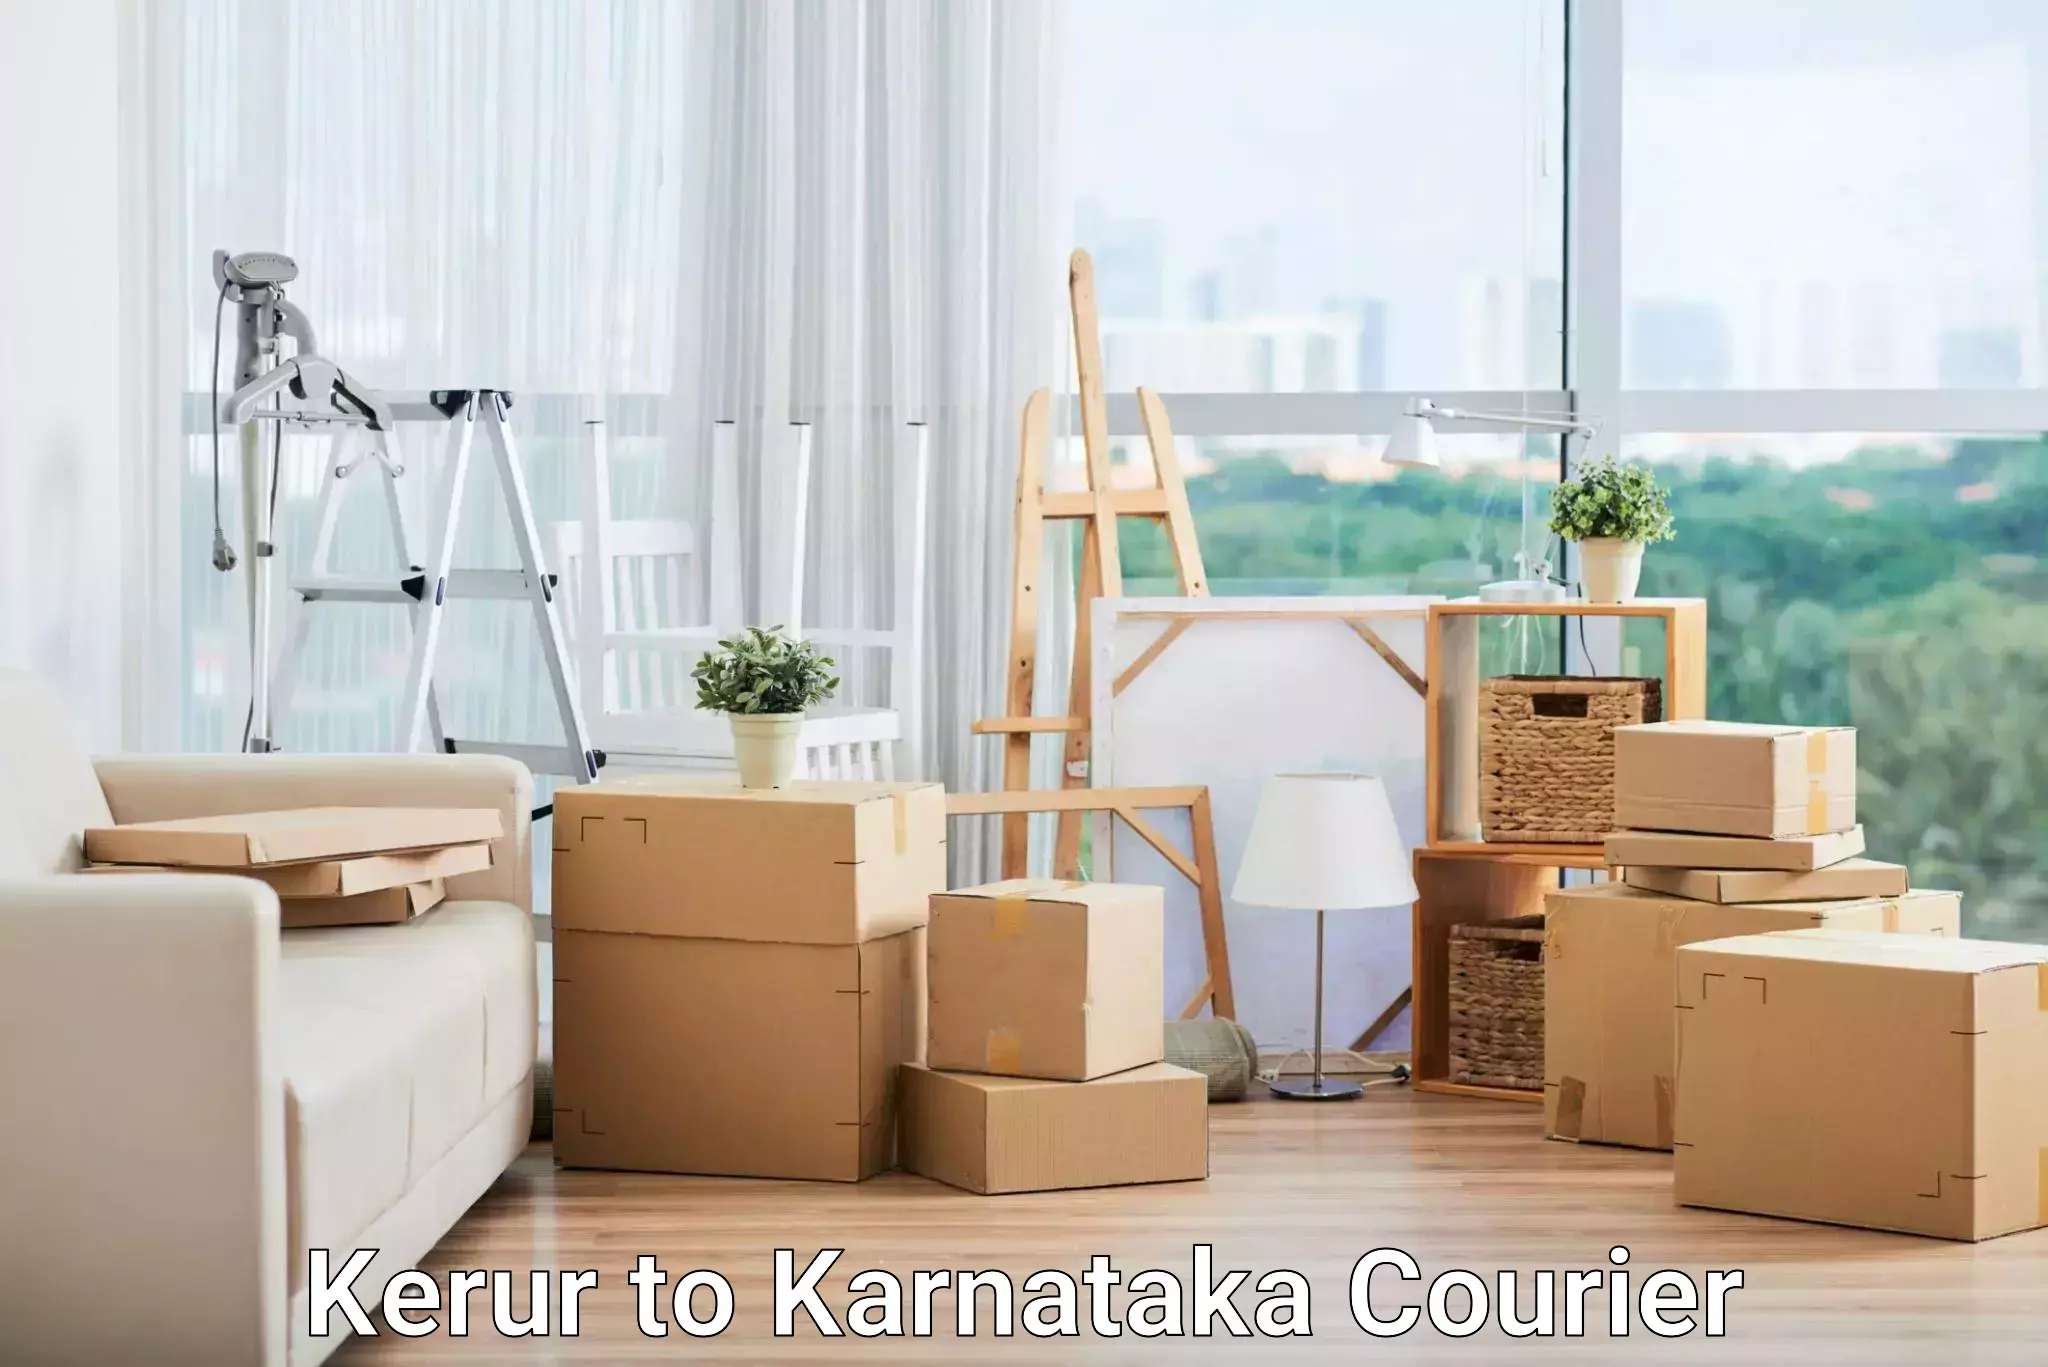 Multi-service courier options Kerur to Mangalore Port